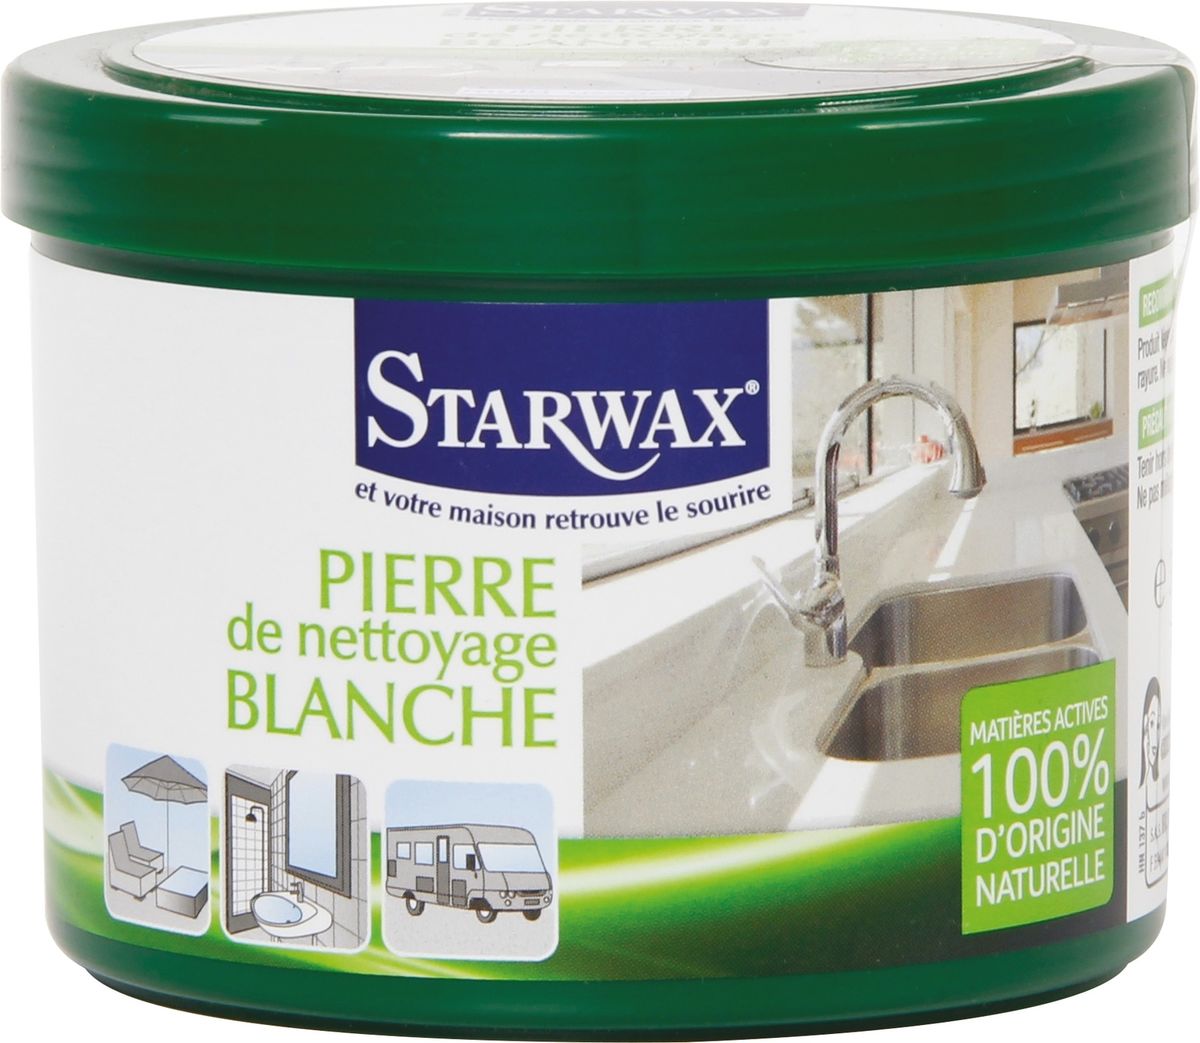 Pierre de nettoyage STARWAX 375g